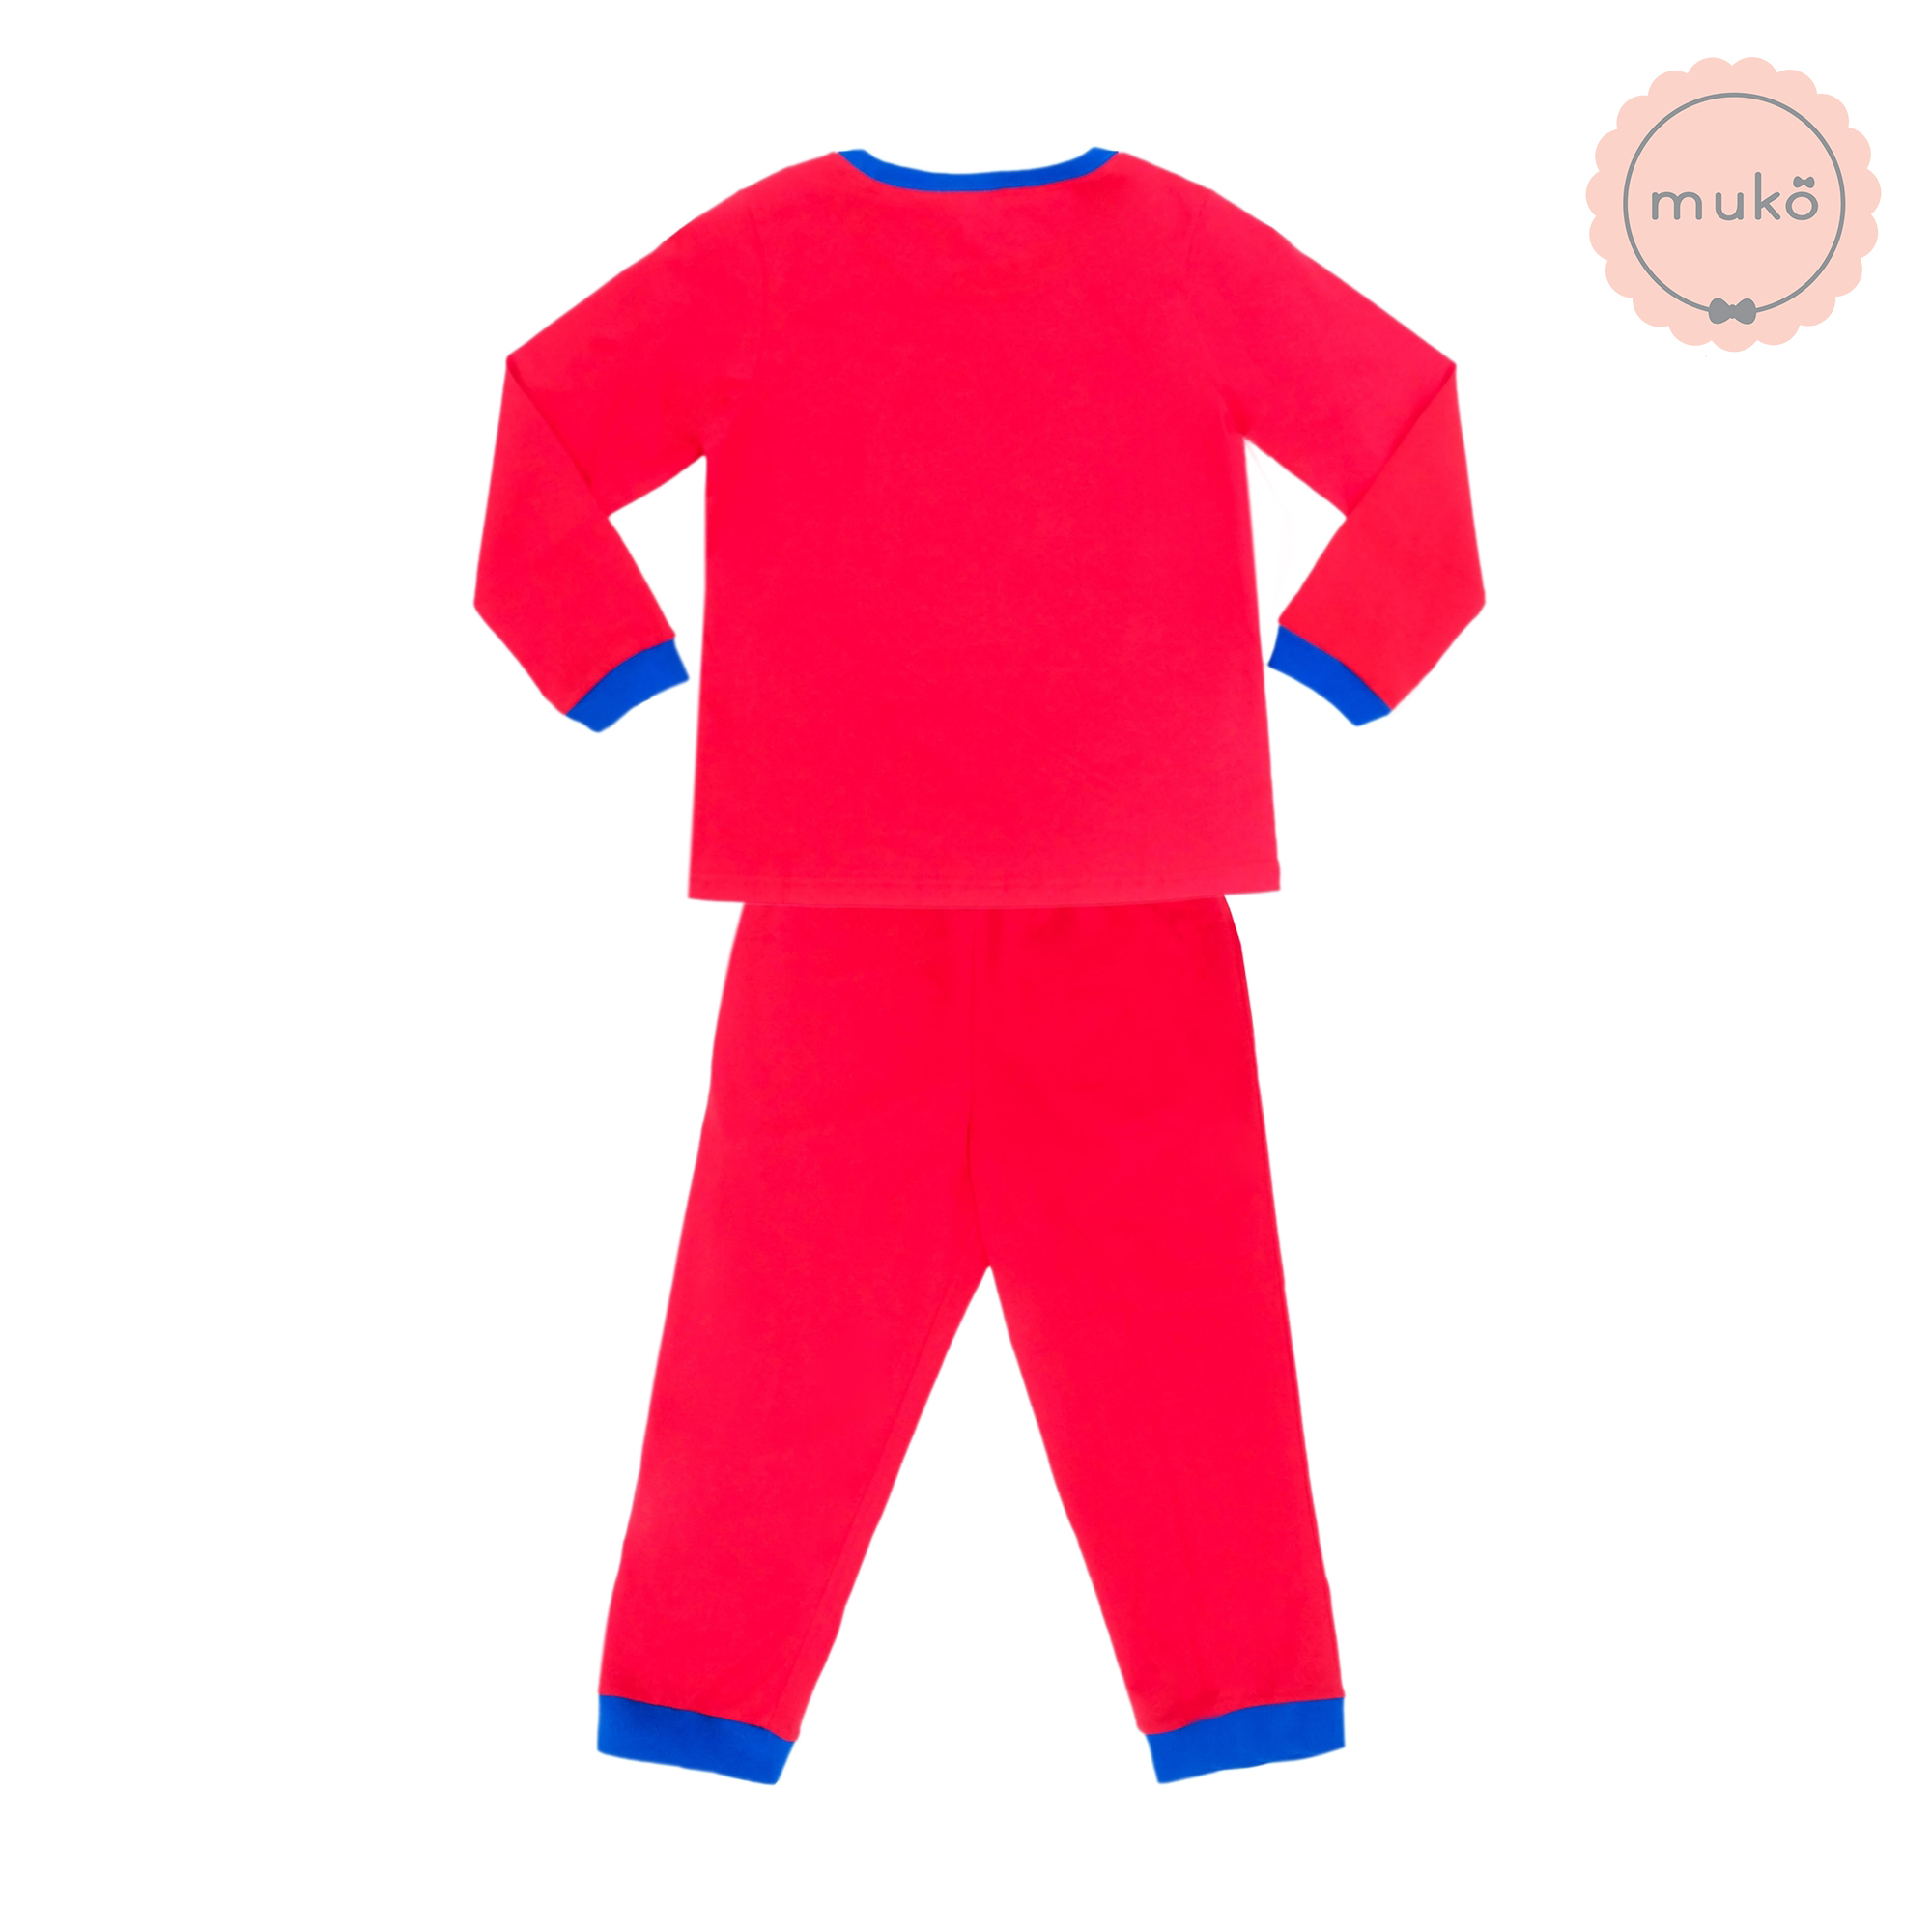 ชุดเด็ก 4-5 ขวบ แขนยาว-ขายาว (Size S) DPC127-09-XL-Red S ลายเจ้าหญิงสโนไวท์ Snow white สีแดง (แดงทั้งชุดขอบน้ำเงิน)